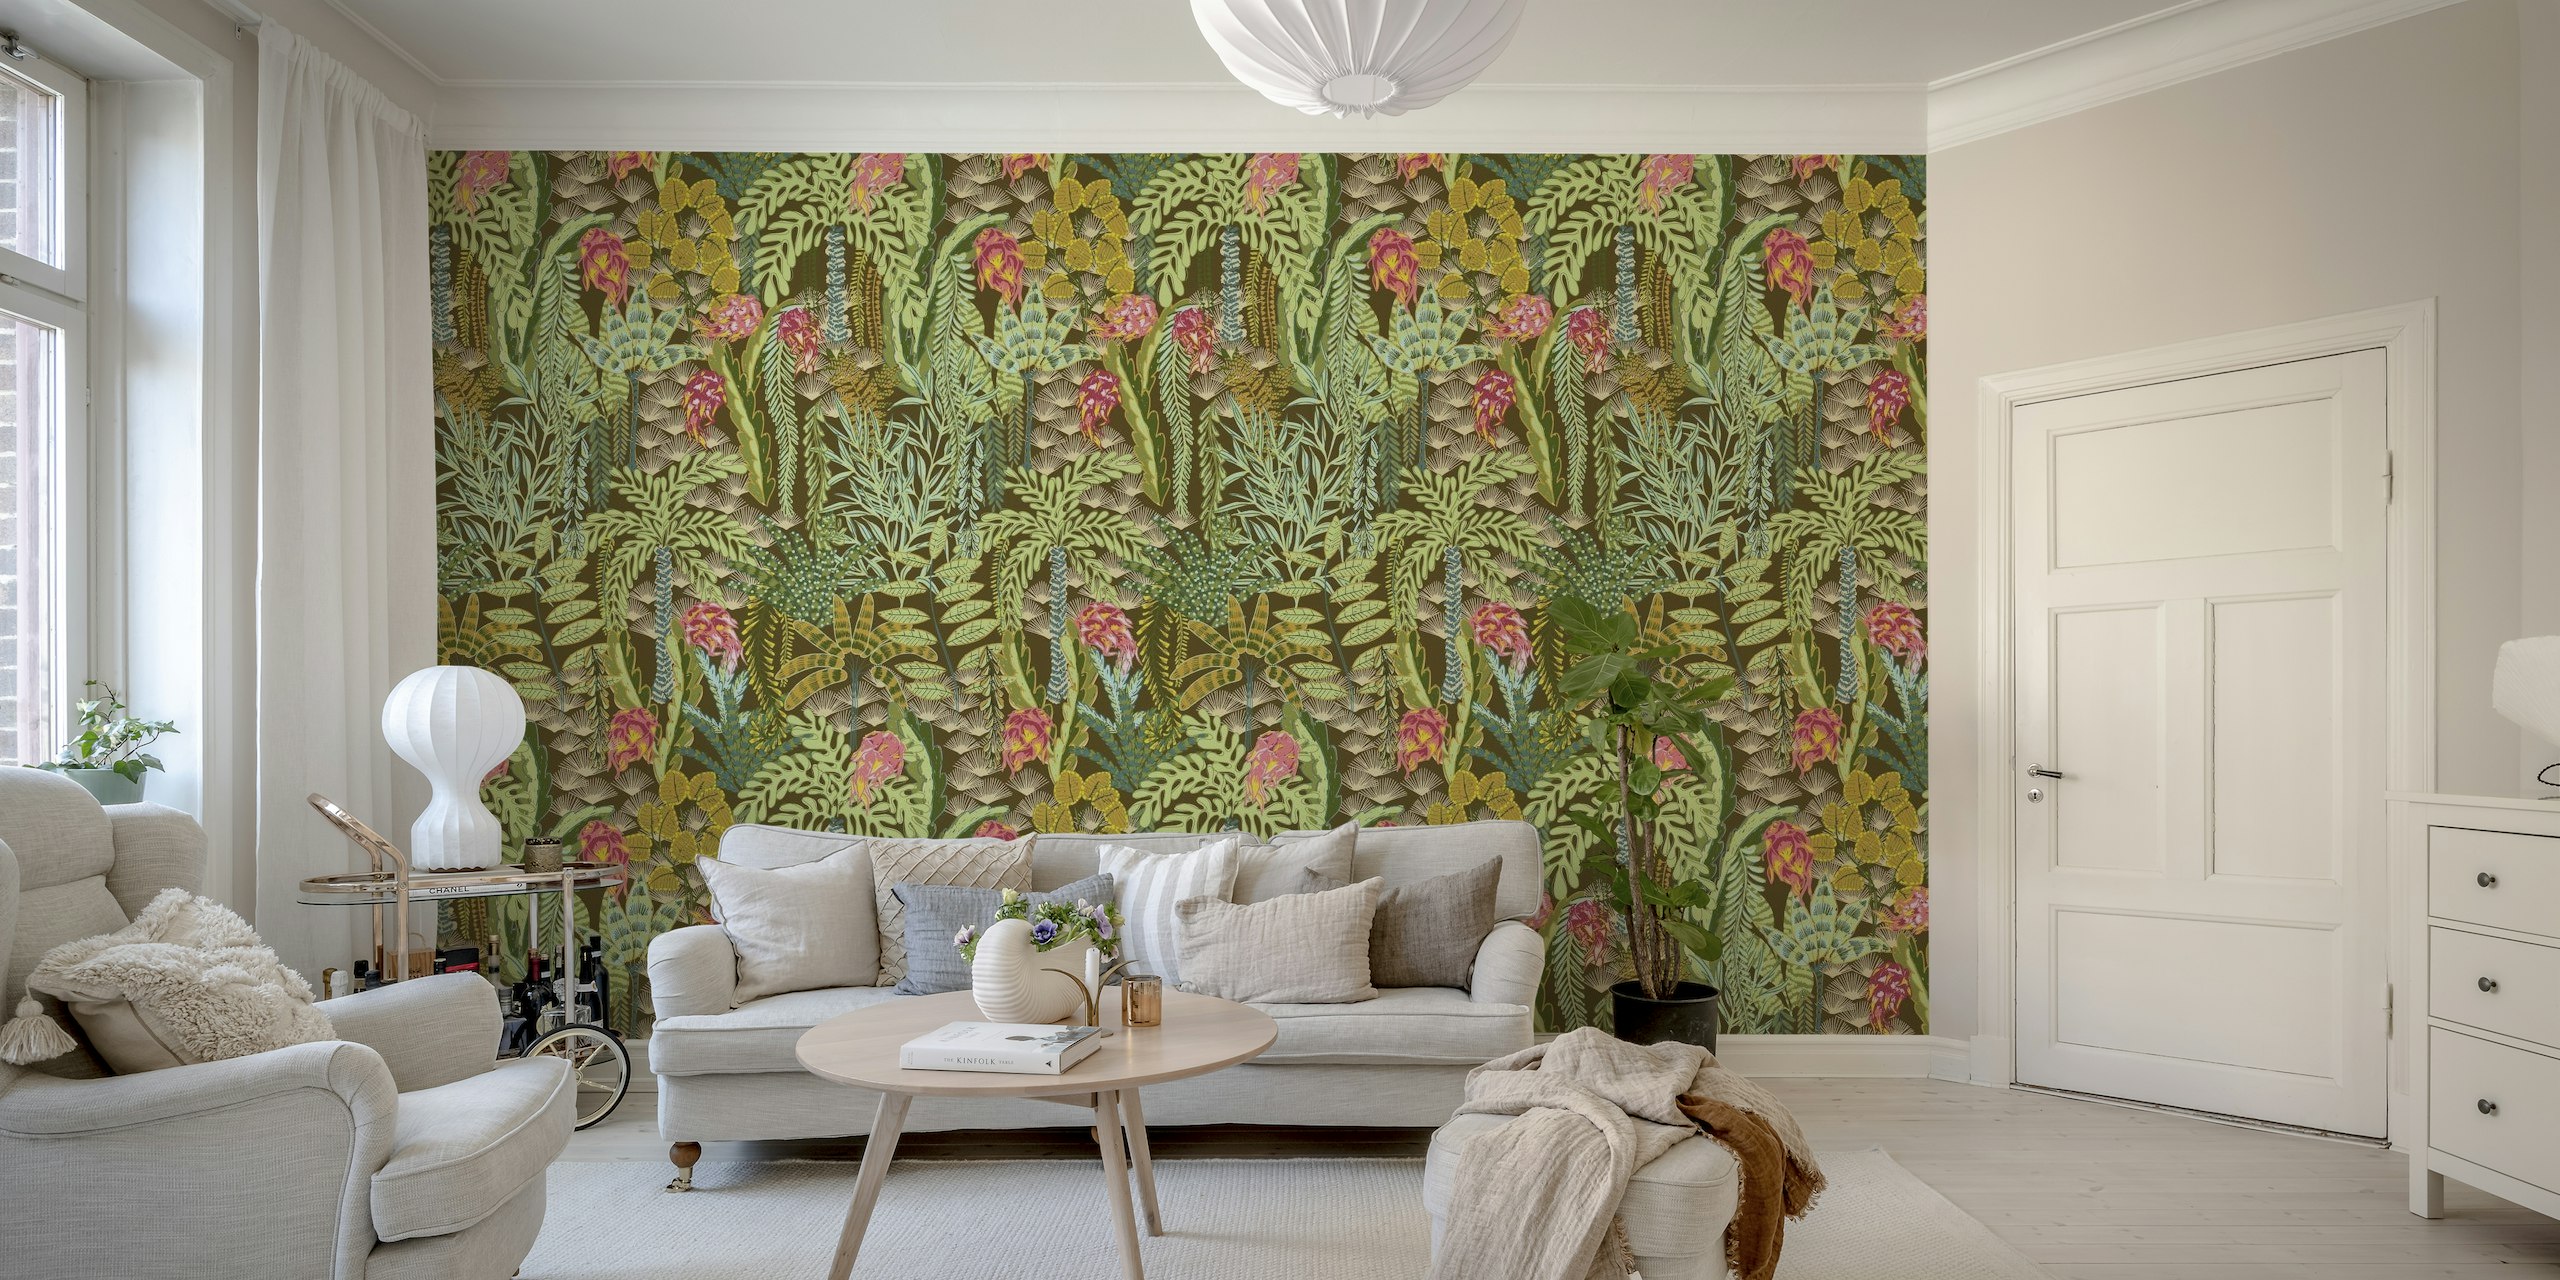 Mural de pared de flora tropical exótica con fruta del dragón y exuberante vegetación sobre un fondo marrón oscuro